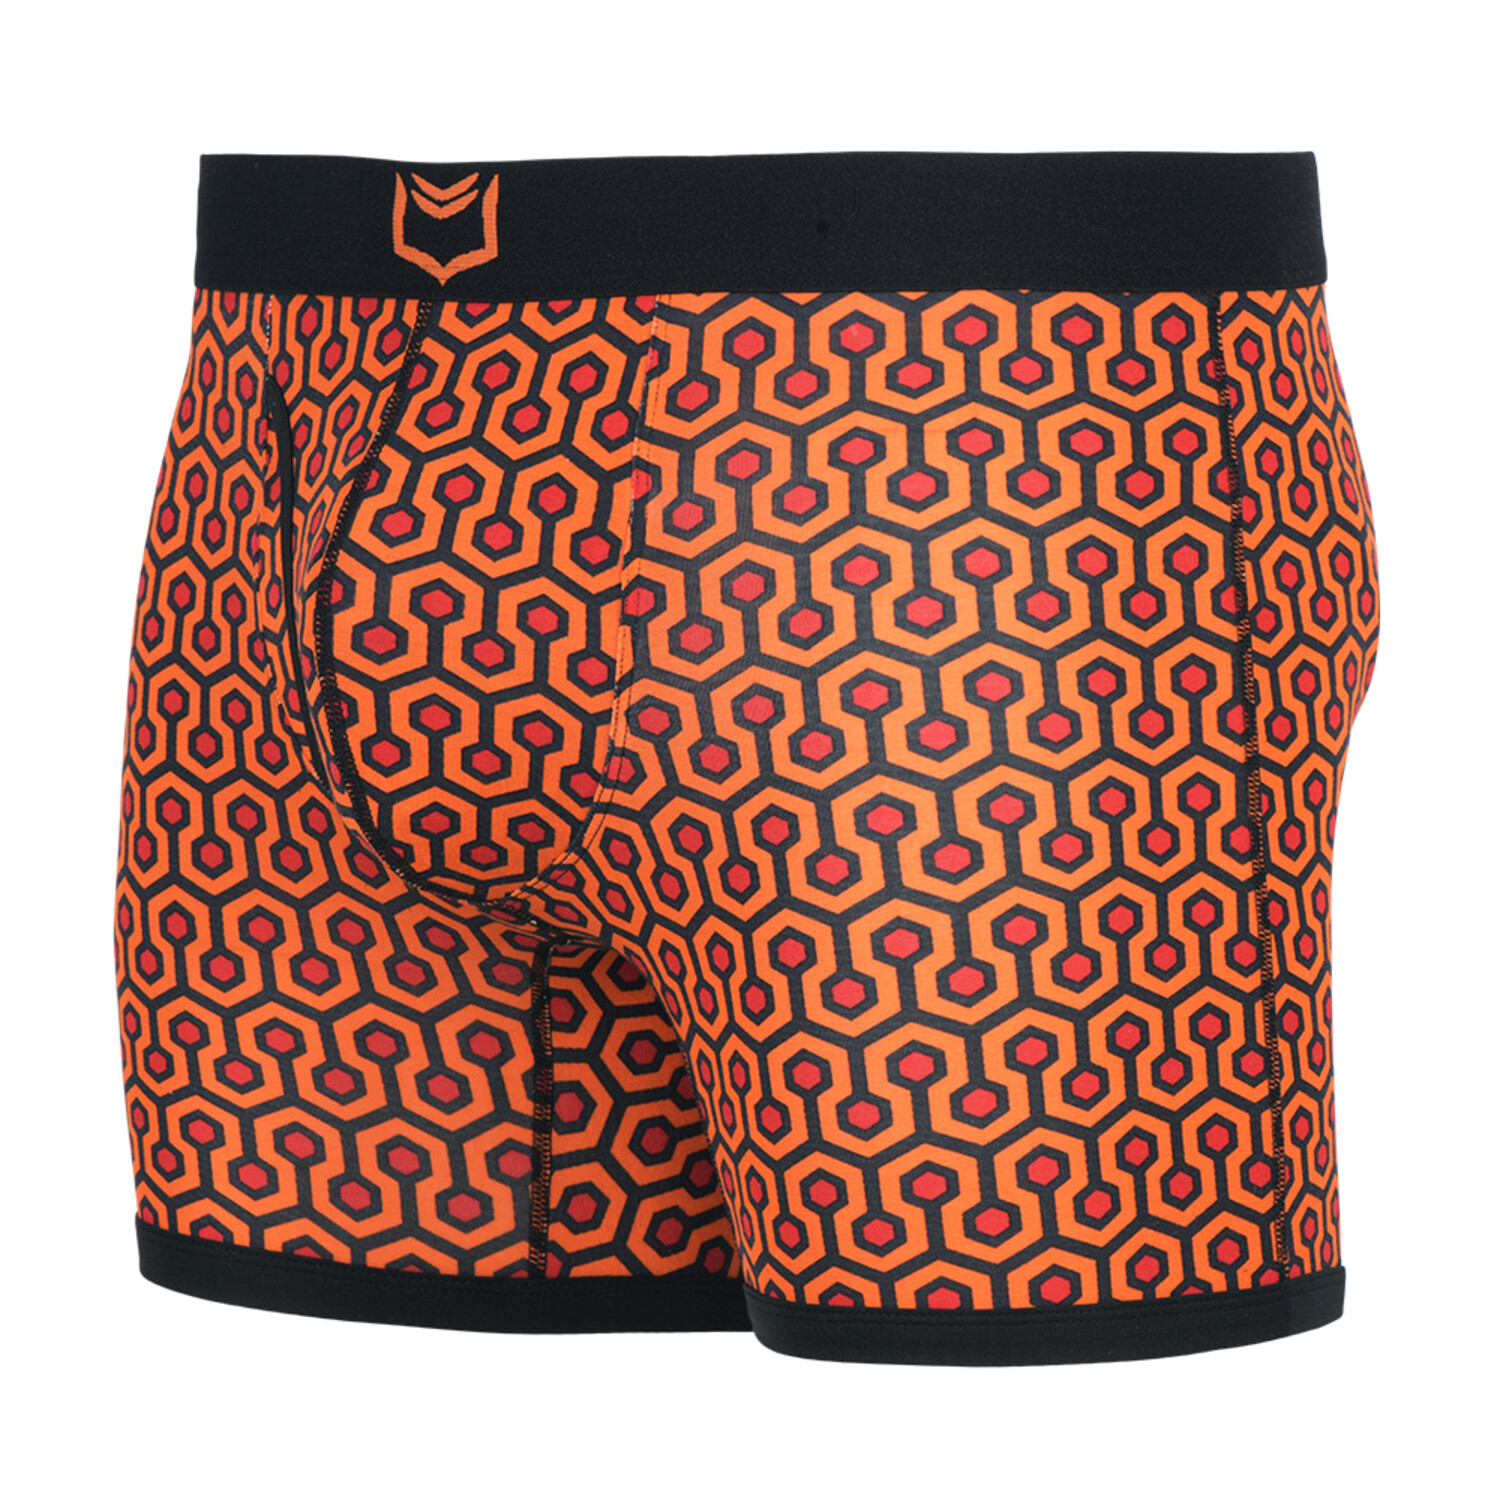 SHEATH 4.0 Men's Dual Pouch Boxer Brief // Orange Hexagon (XXX Large) - Sheath  Underwear - Touch of Modern